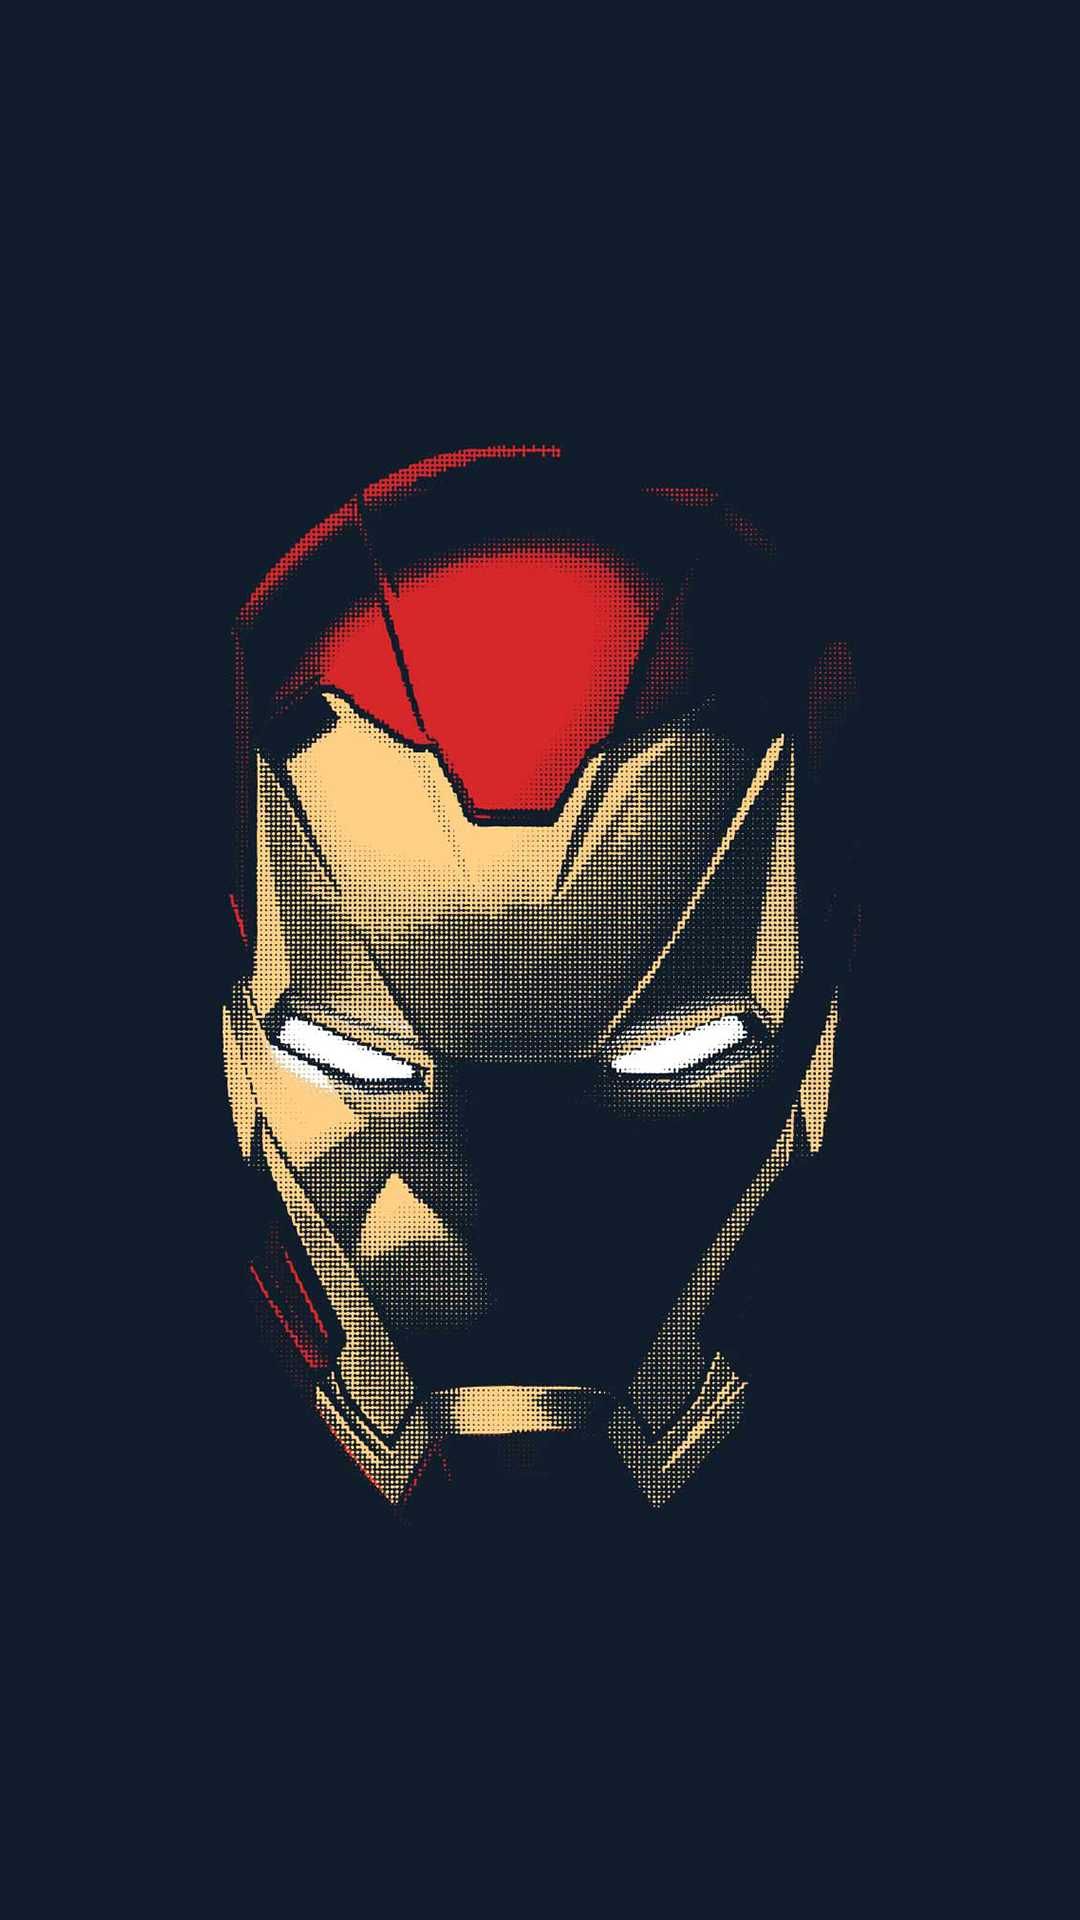 Pictures Of Iron Man Helmet Wallpapers